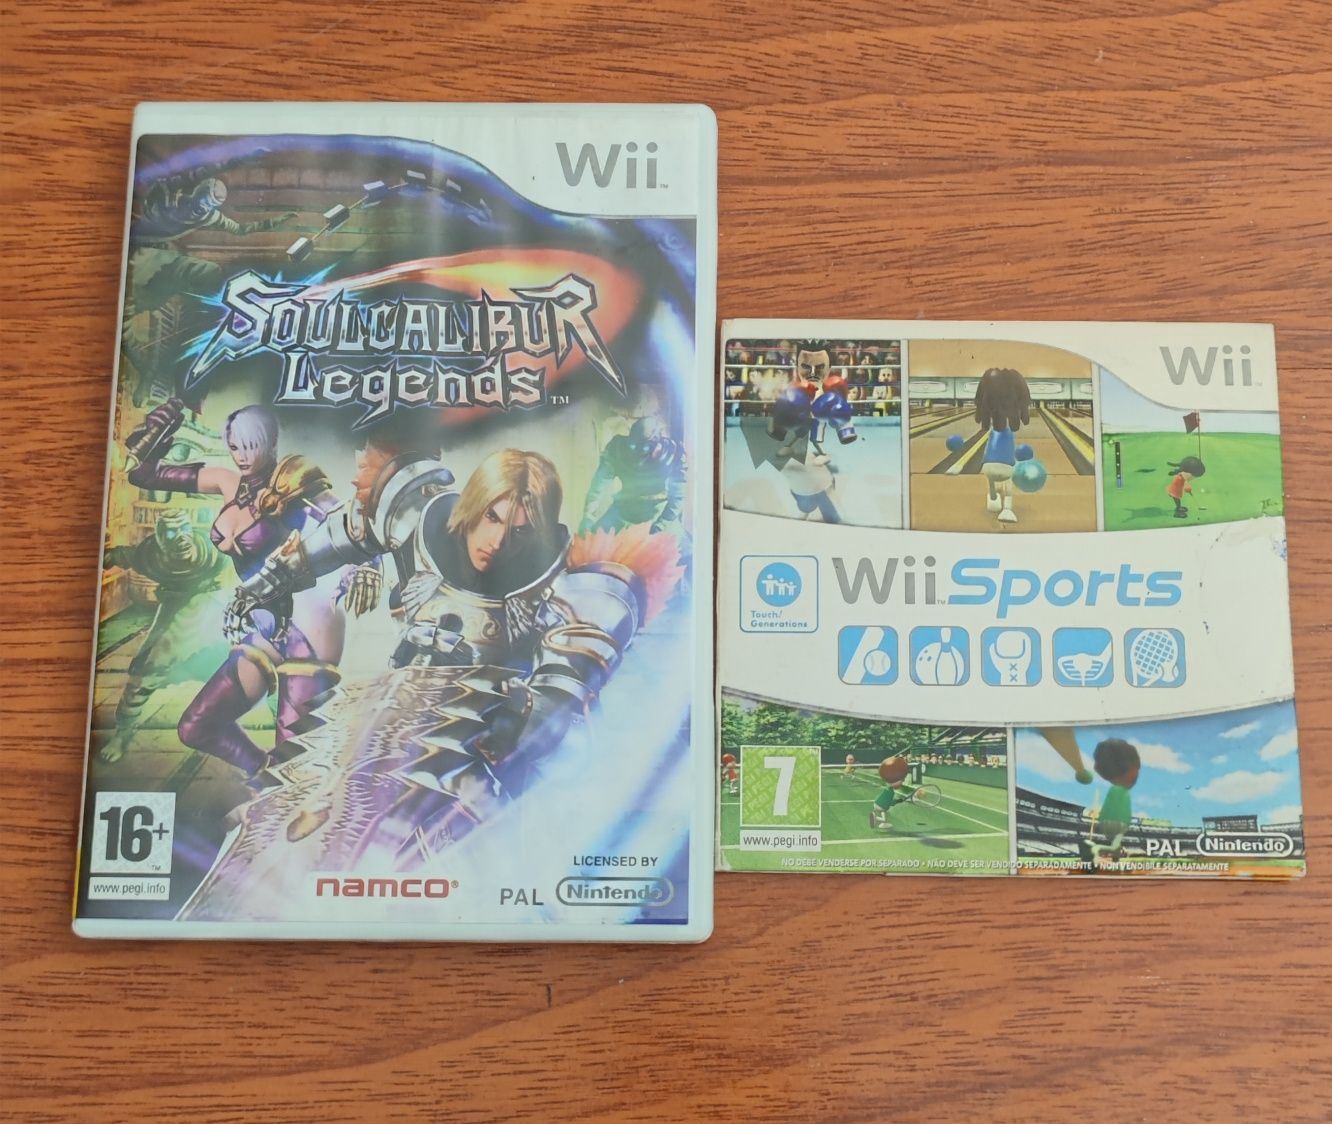 Jogos, PSP, Nintendo DS, Wii.